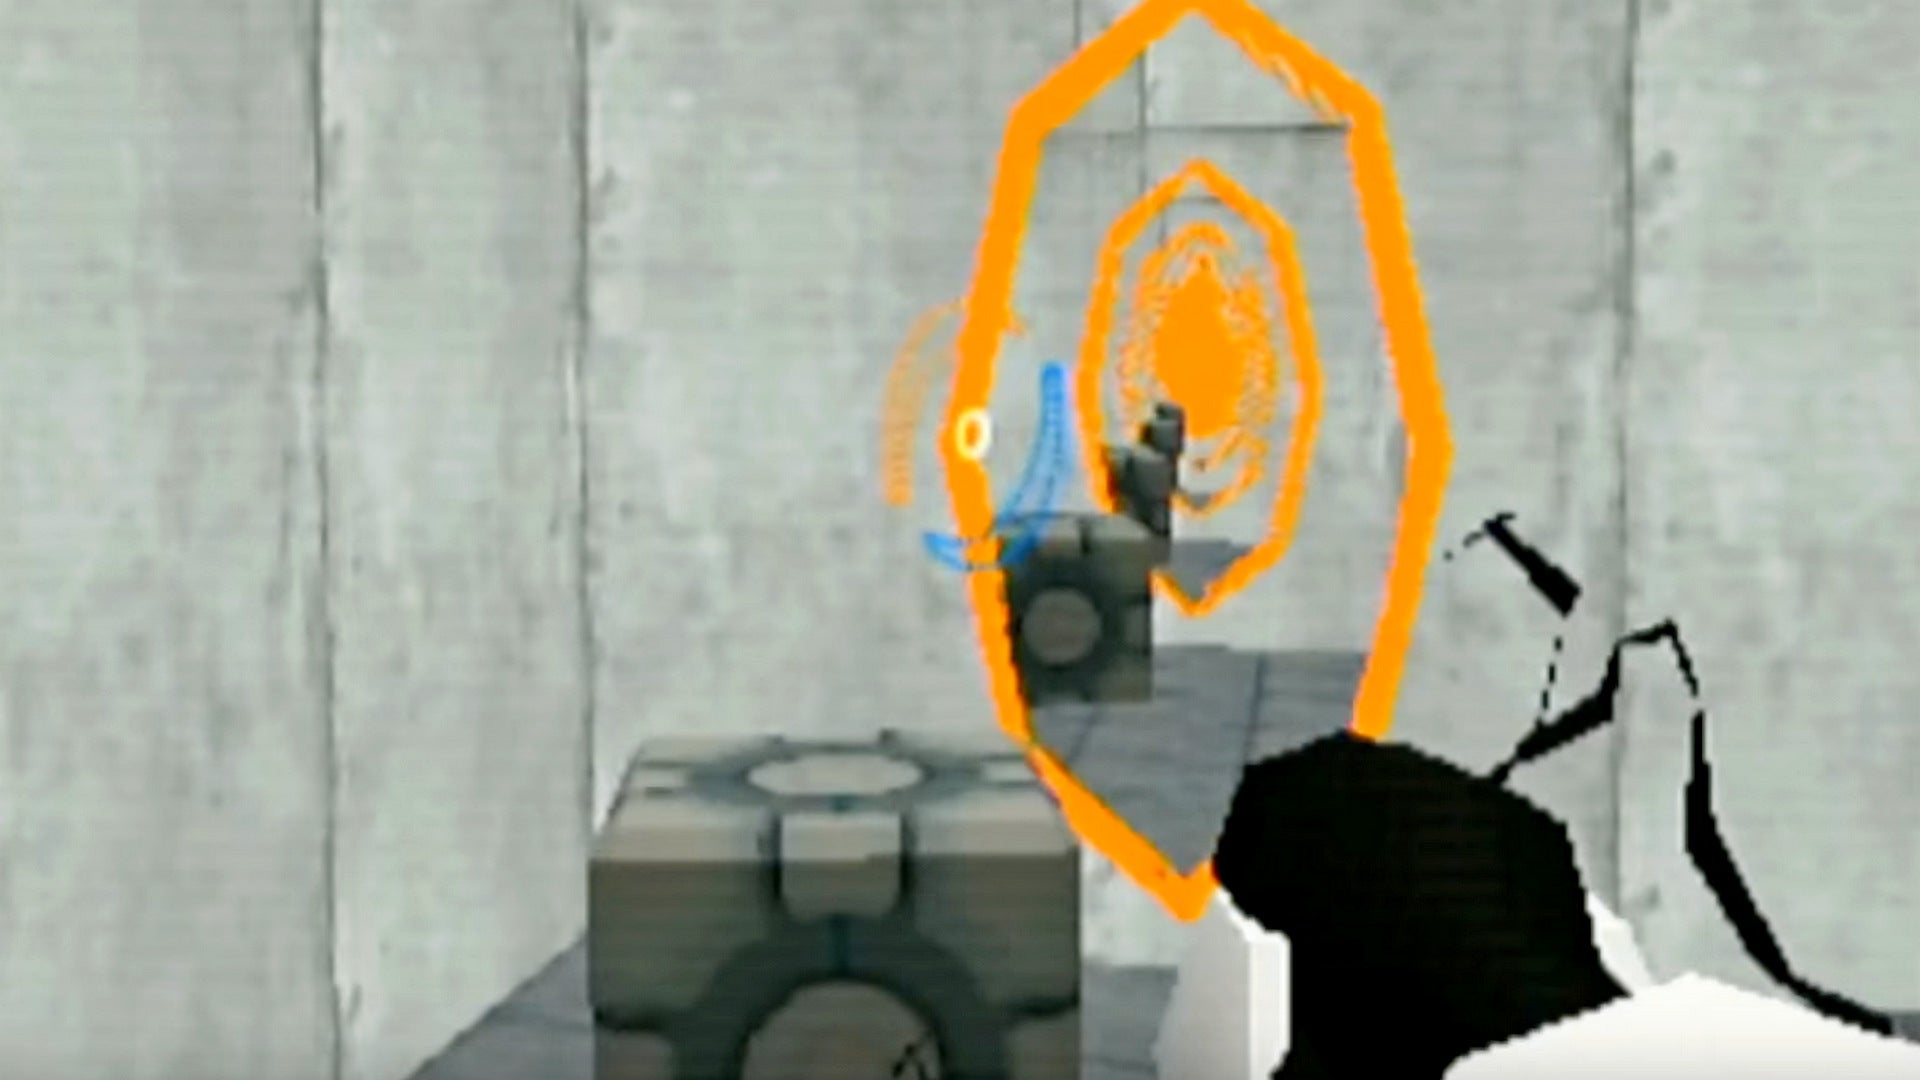 Bilder zu Portal: Demake läuft auf "echter N64-Hardware"